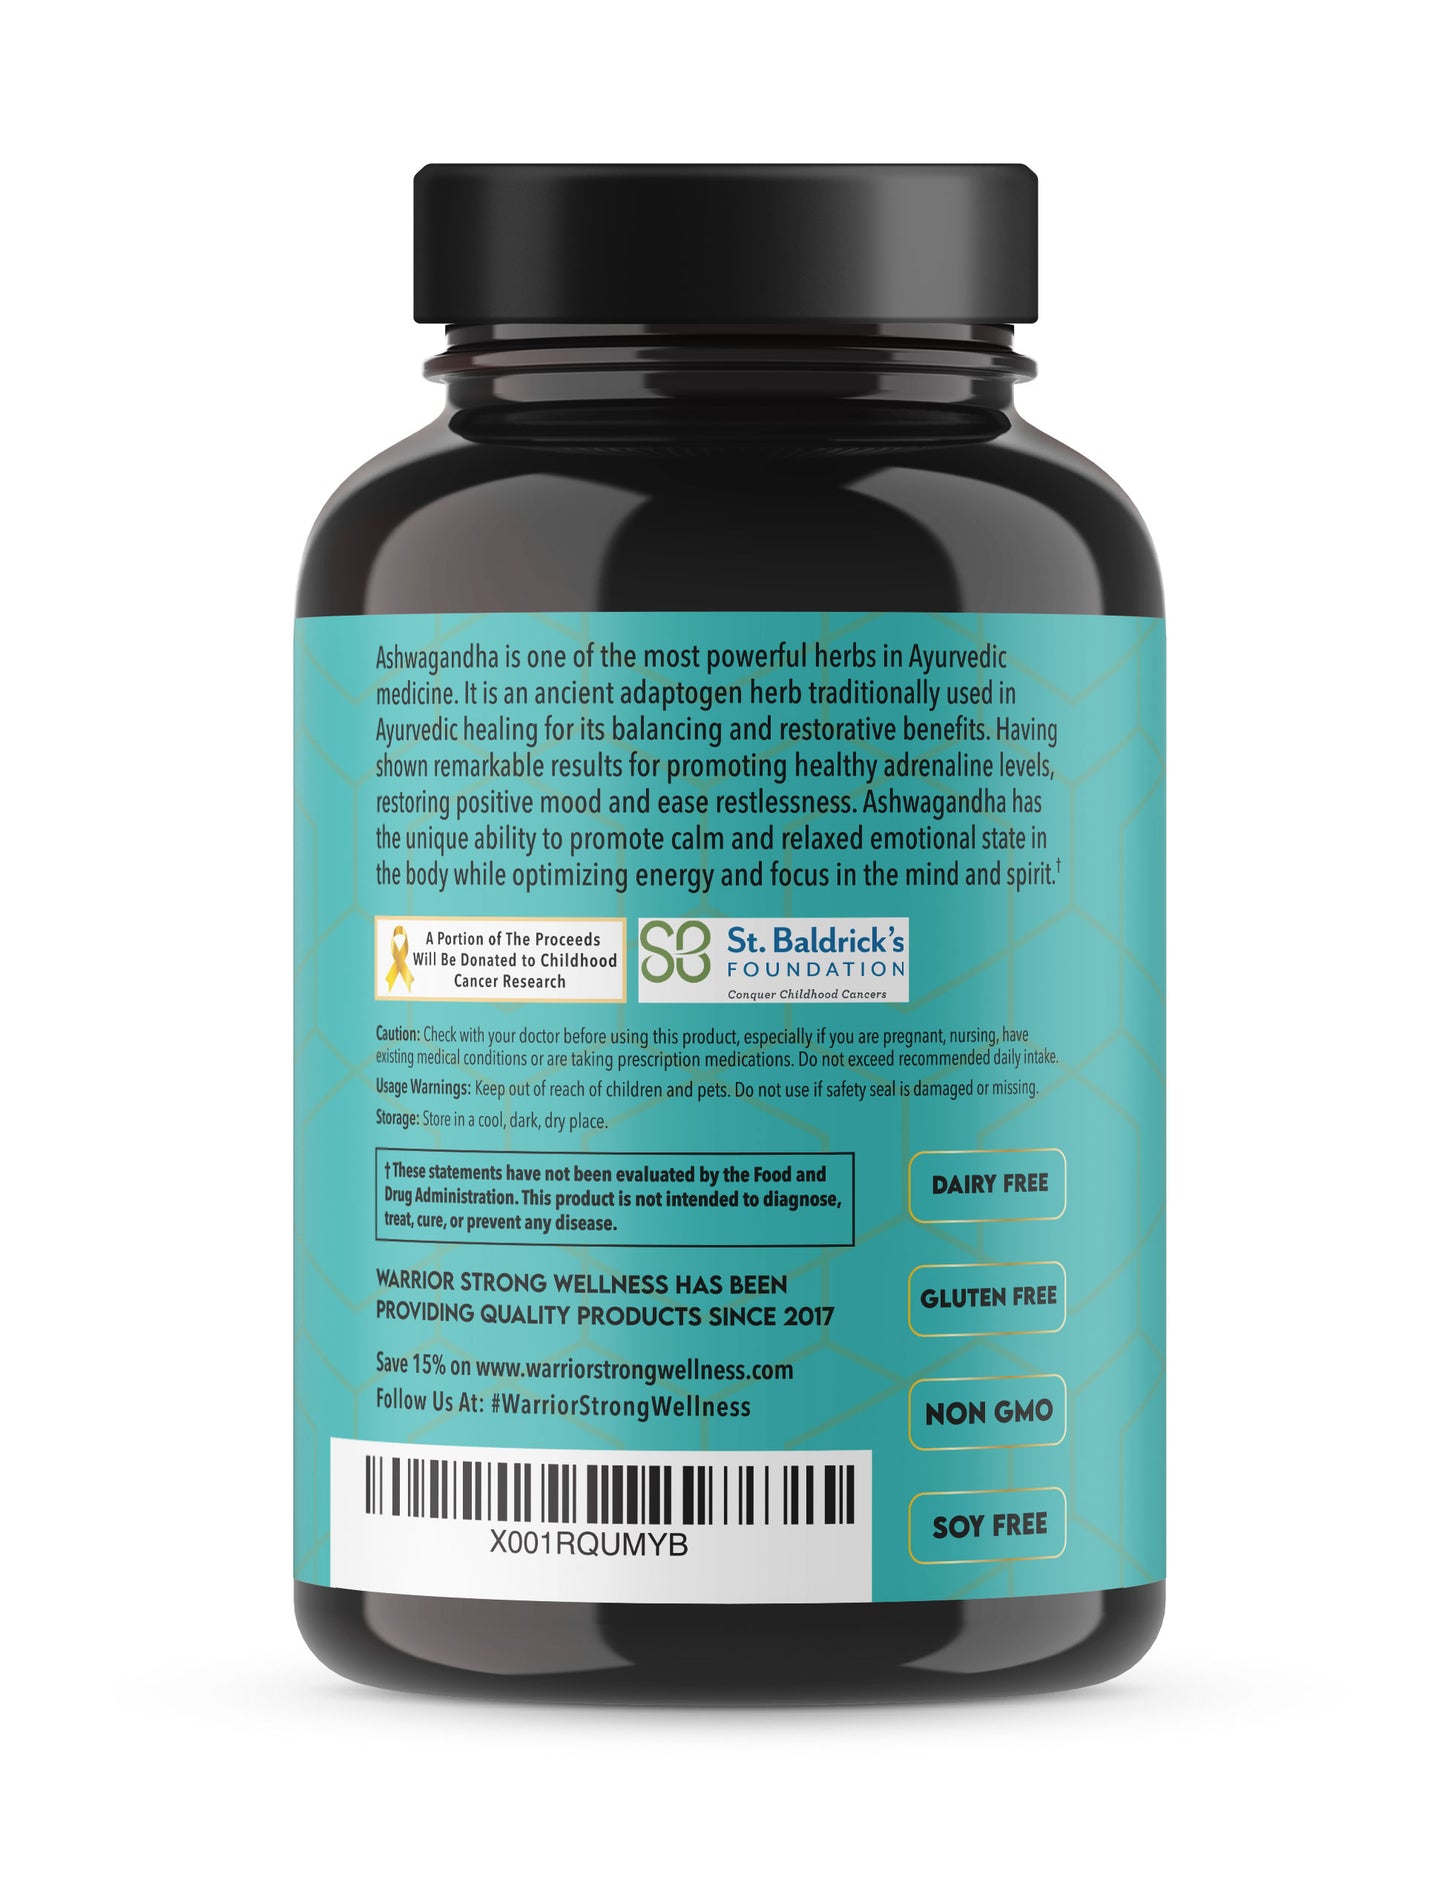 Pure Organic Ashwagandha Max -Supports Healthy Stress Response, Adrenal, Immune & Balances Mood